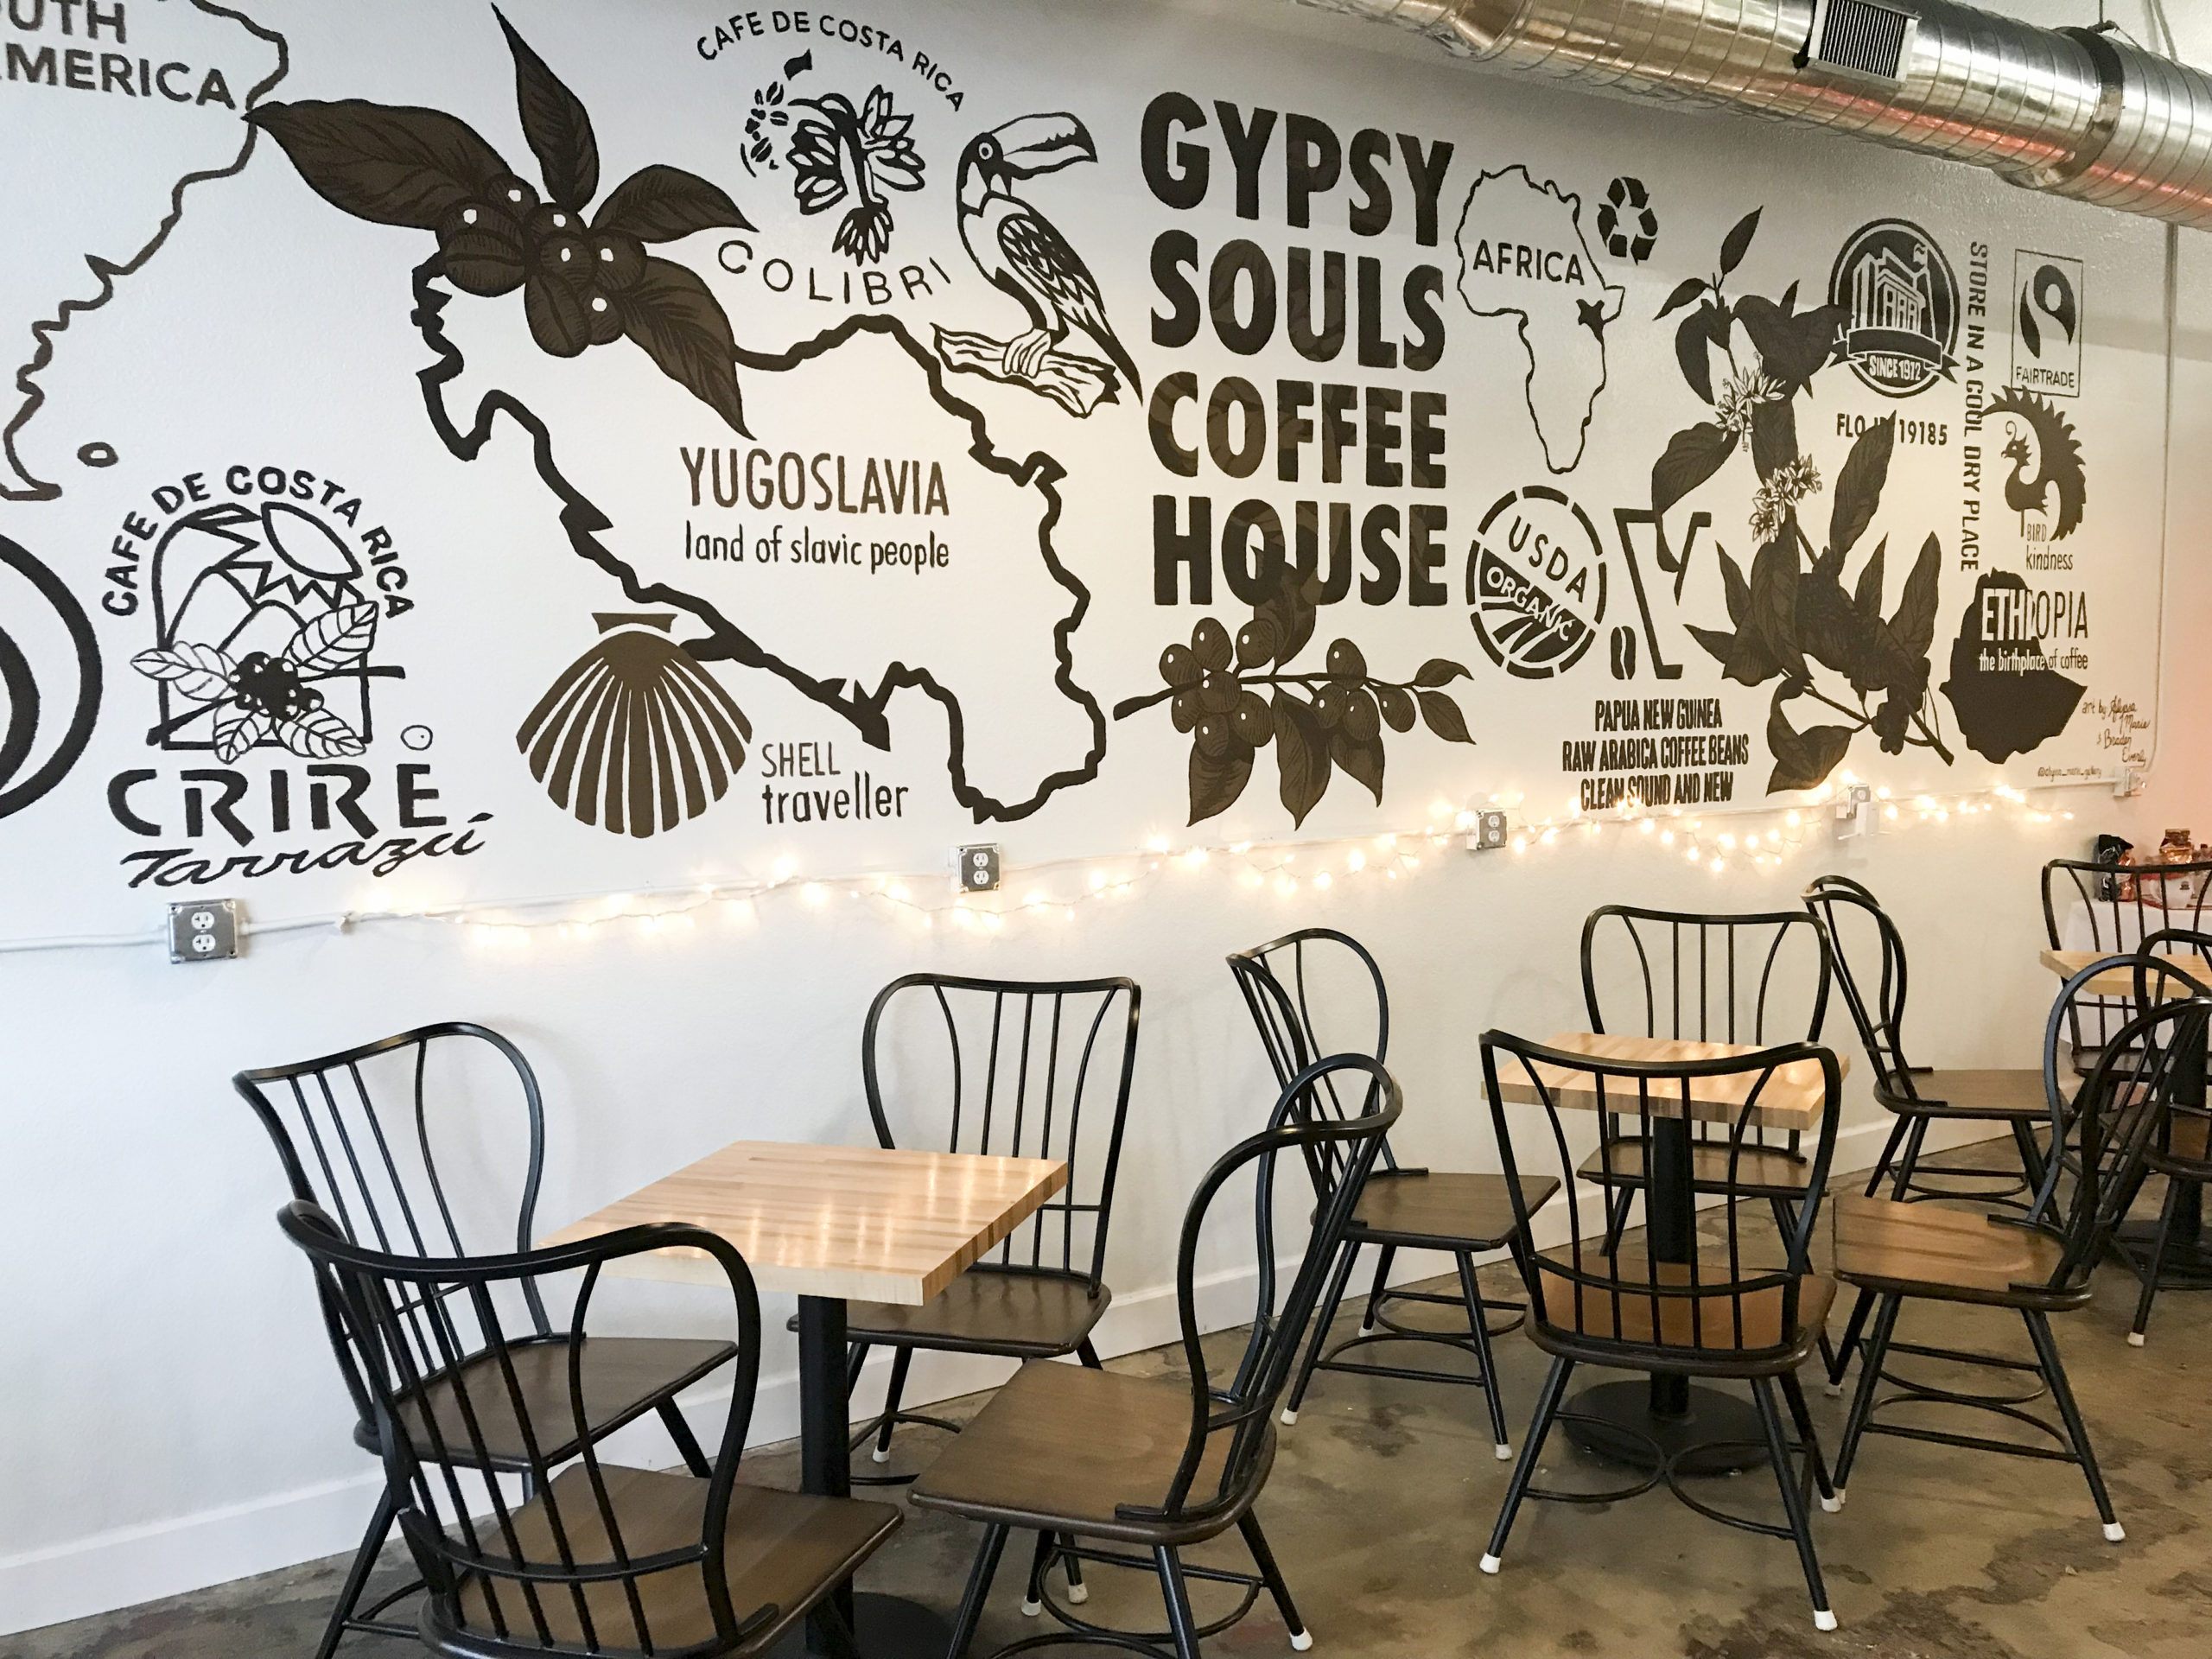 Gypsy Souls Coffeehouse